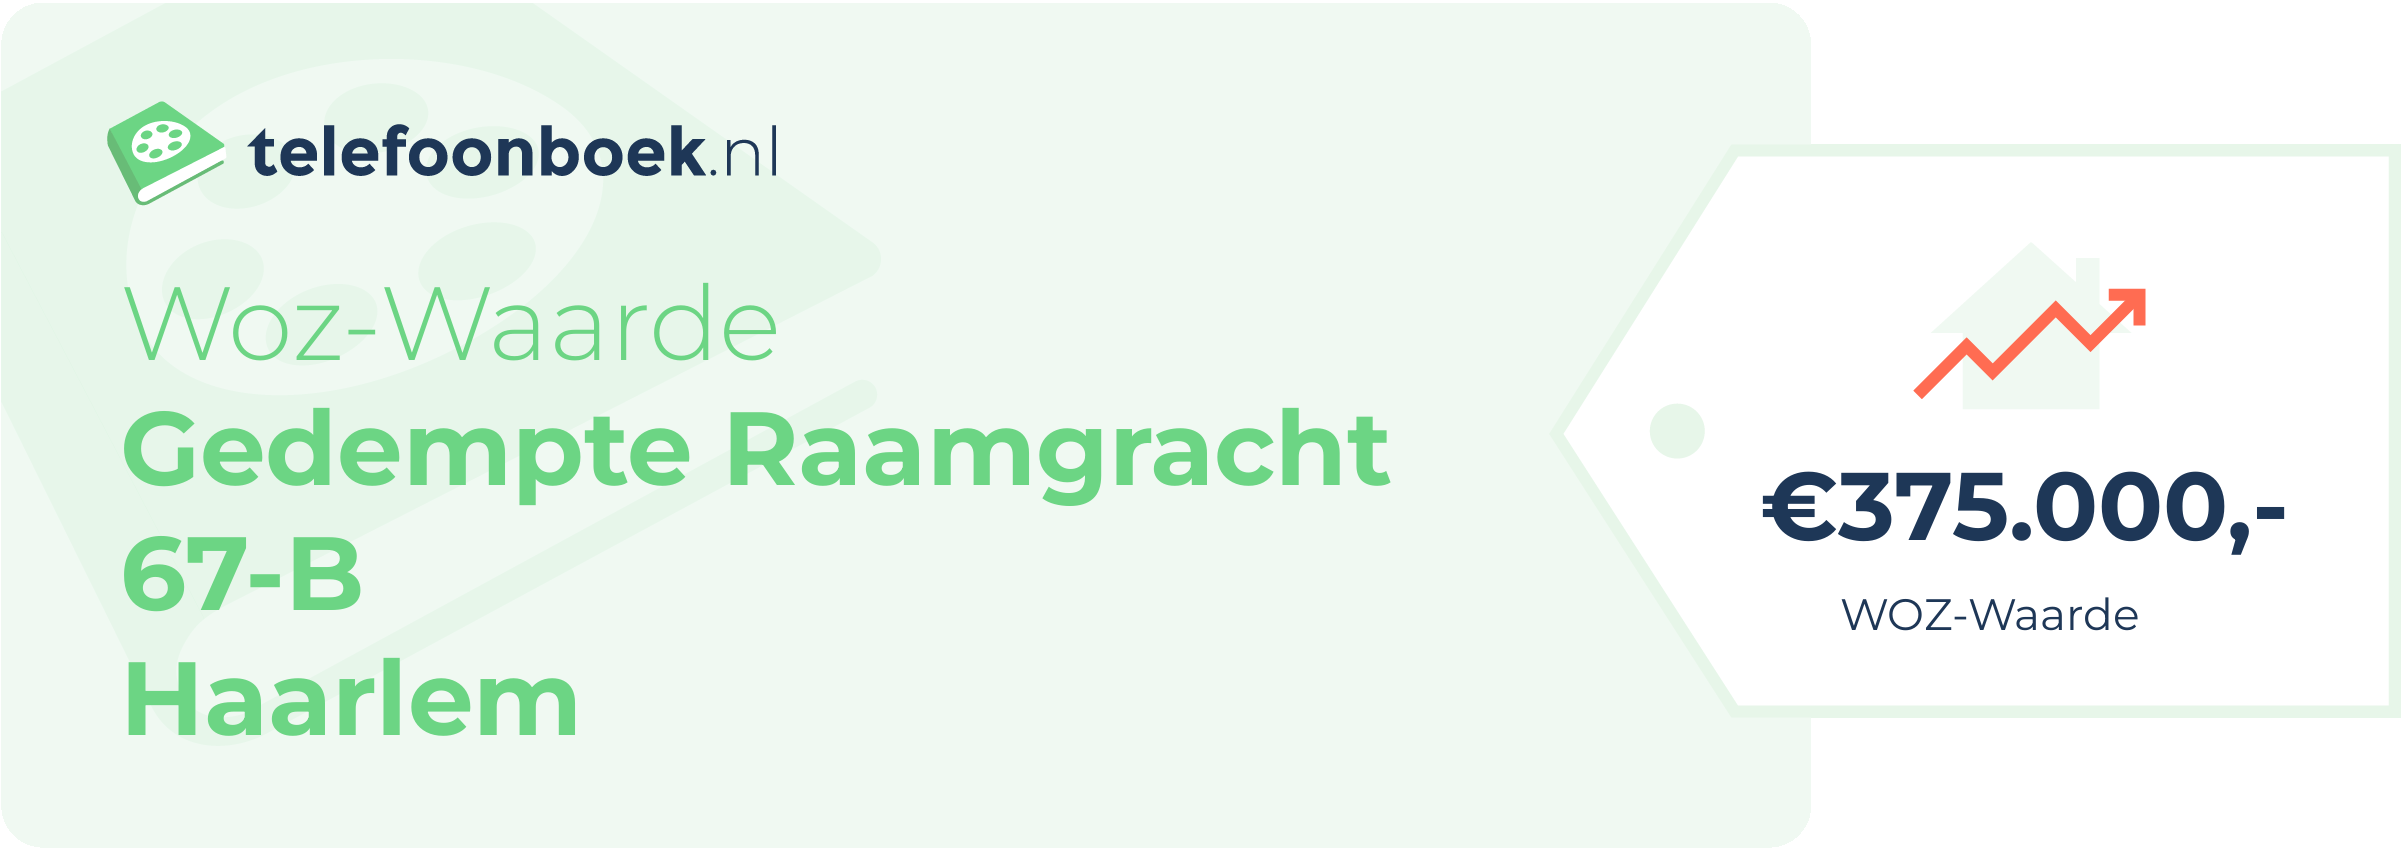 WOZ-waarde Gedempte Raamgracht 67-B Haarlem